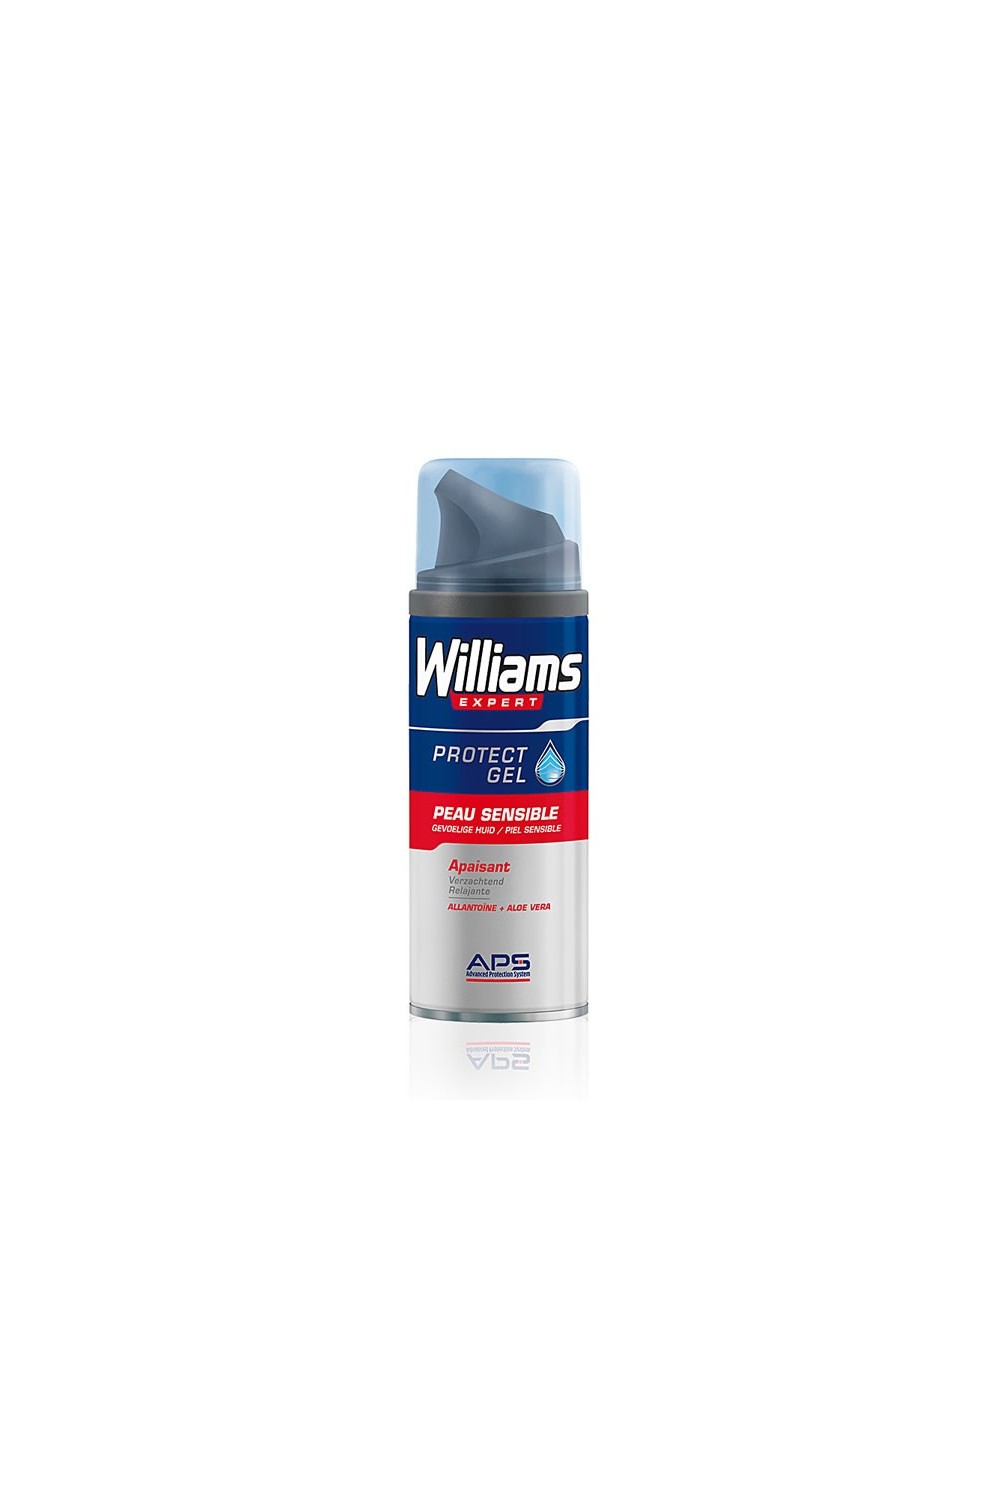 Williams Expert Shaving Gel Sensitive Skin 75ml